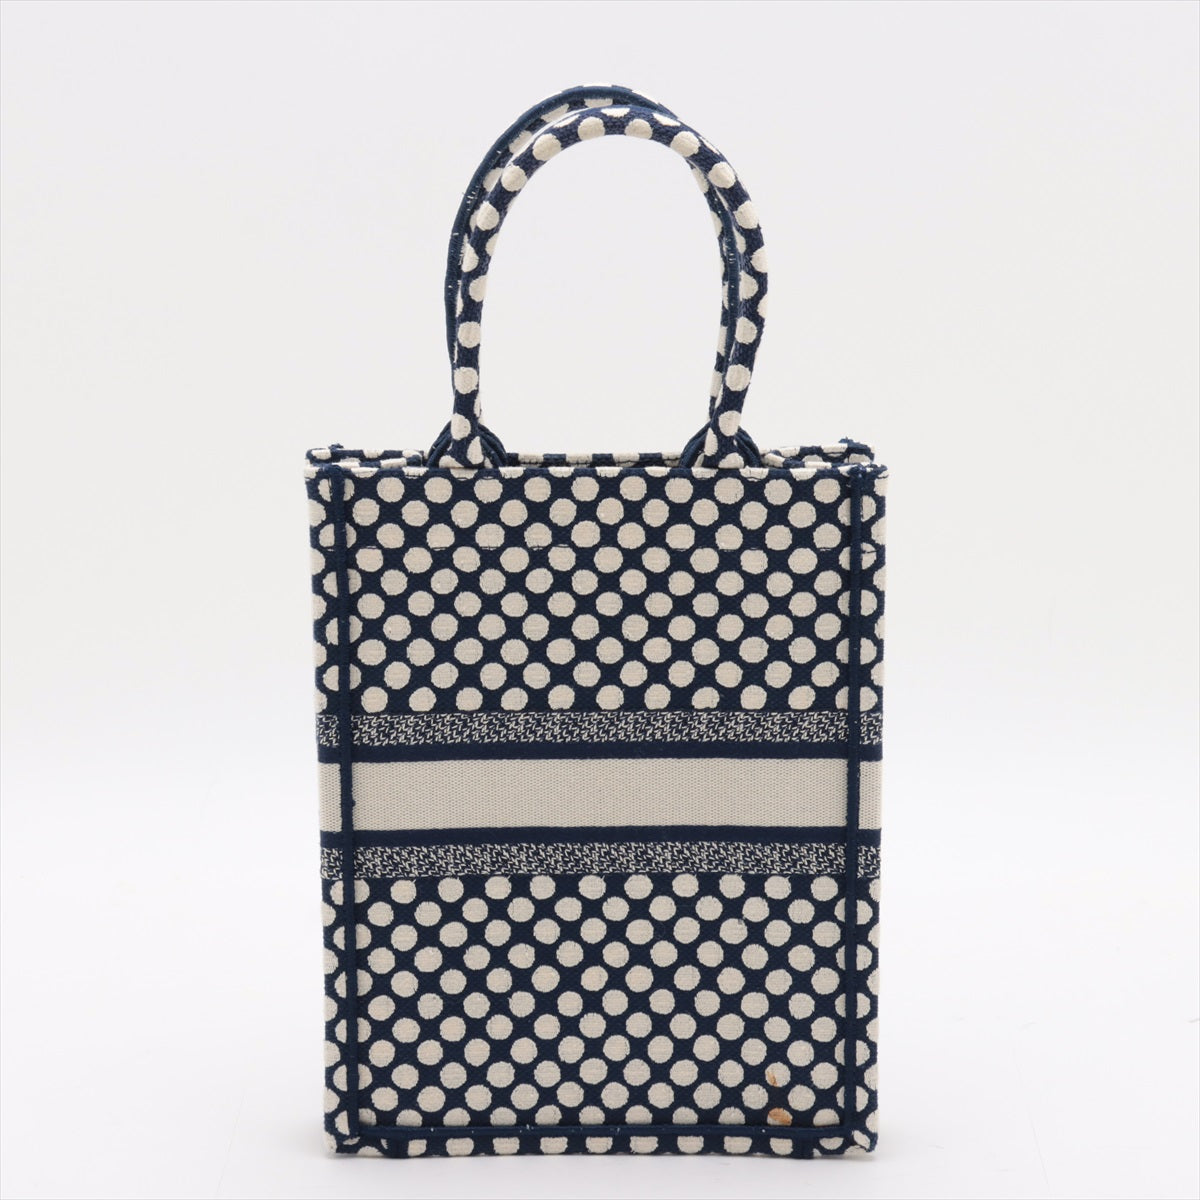 Christian Dior Vertical Book Tote Linen Handbag Navy Navi